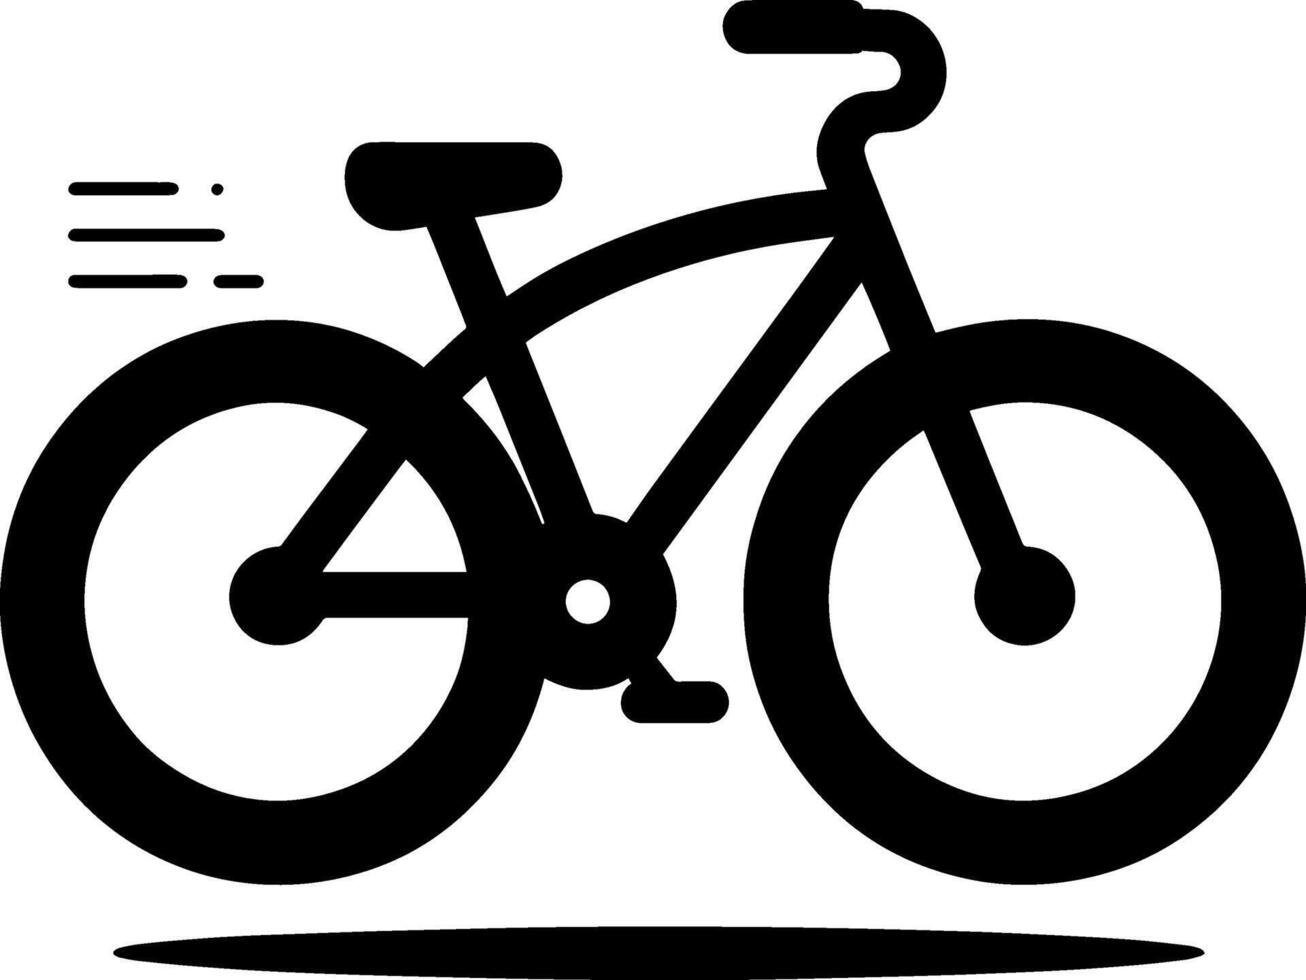 enkel logotyp ClipArt, abstrakt silhuett cyklist Vinka stil illustration av cykel cykling cykel sporter lopp ikon vektor